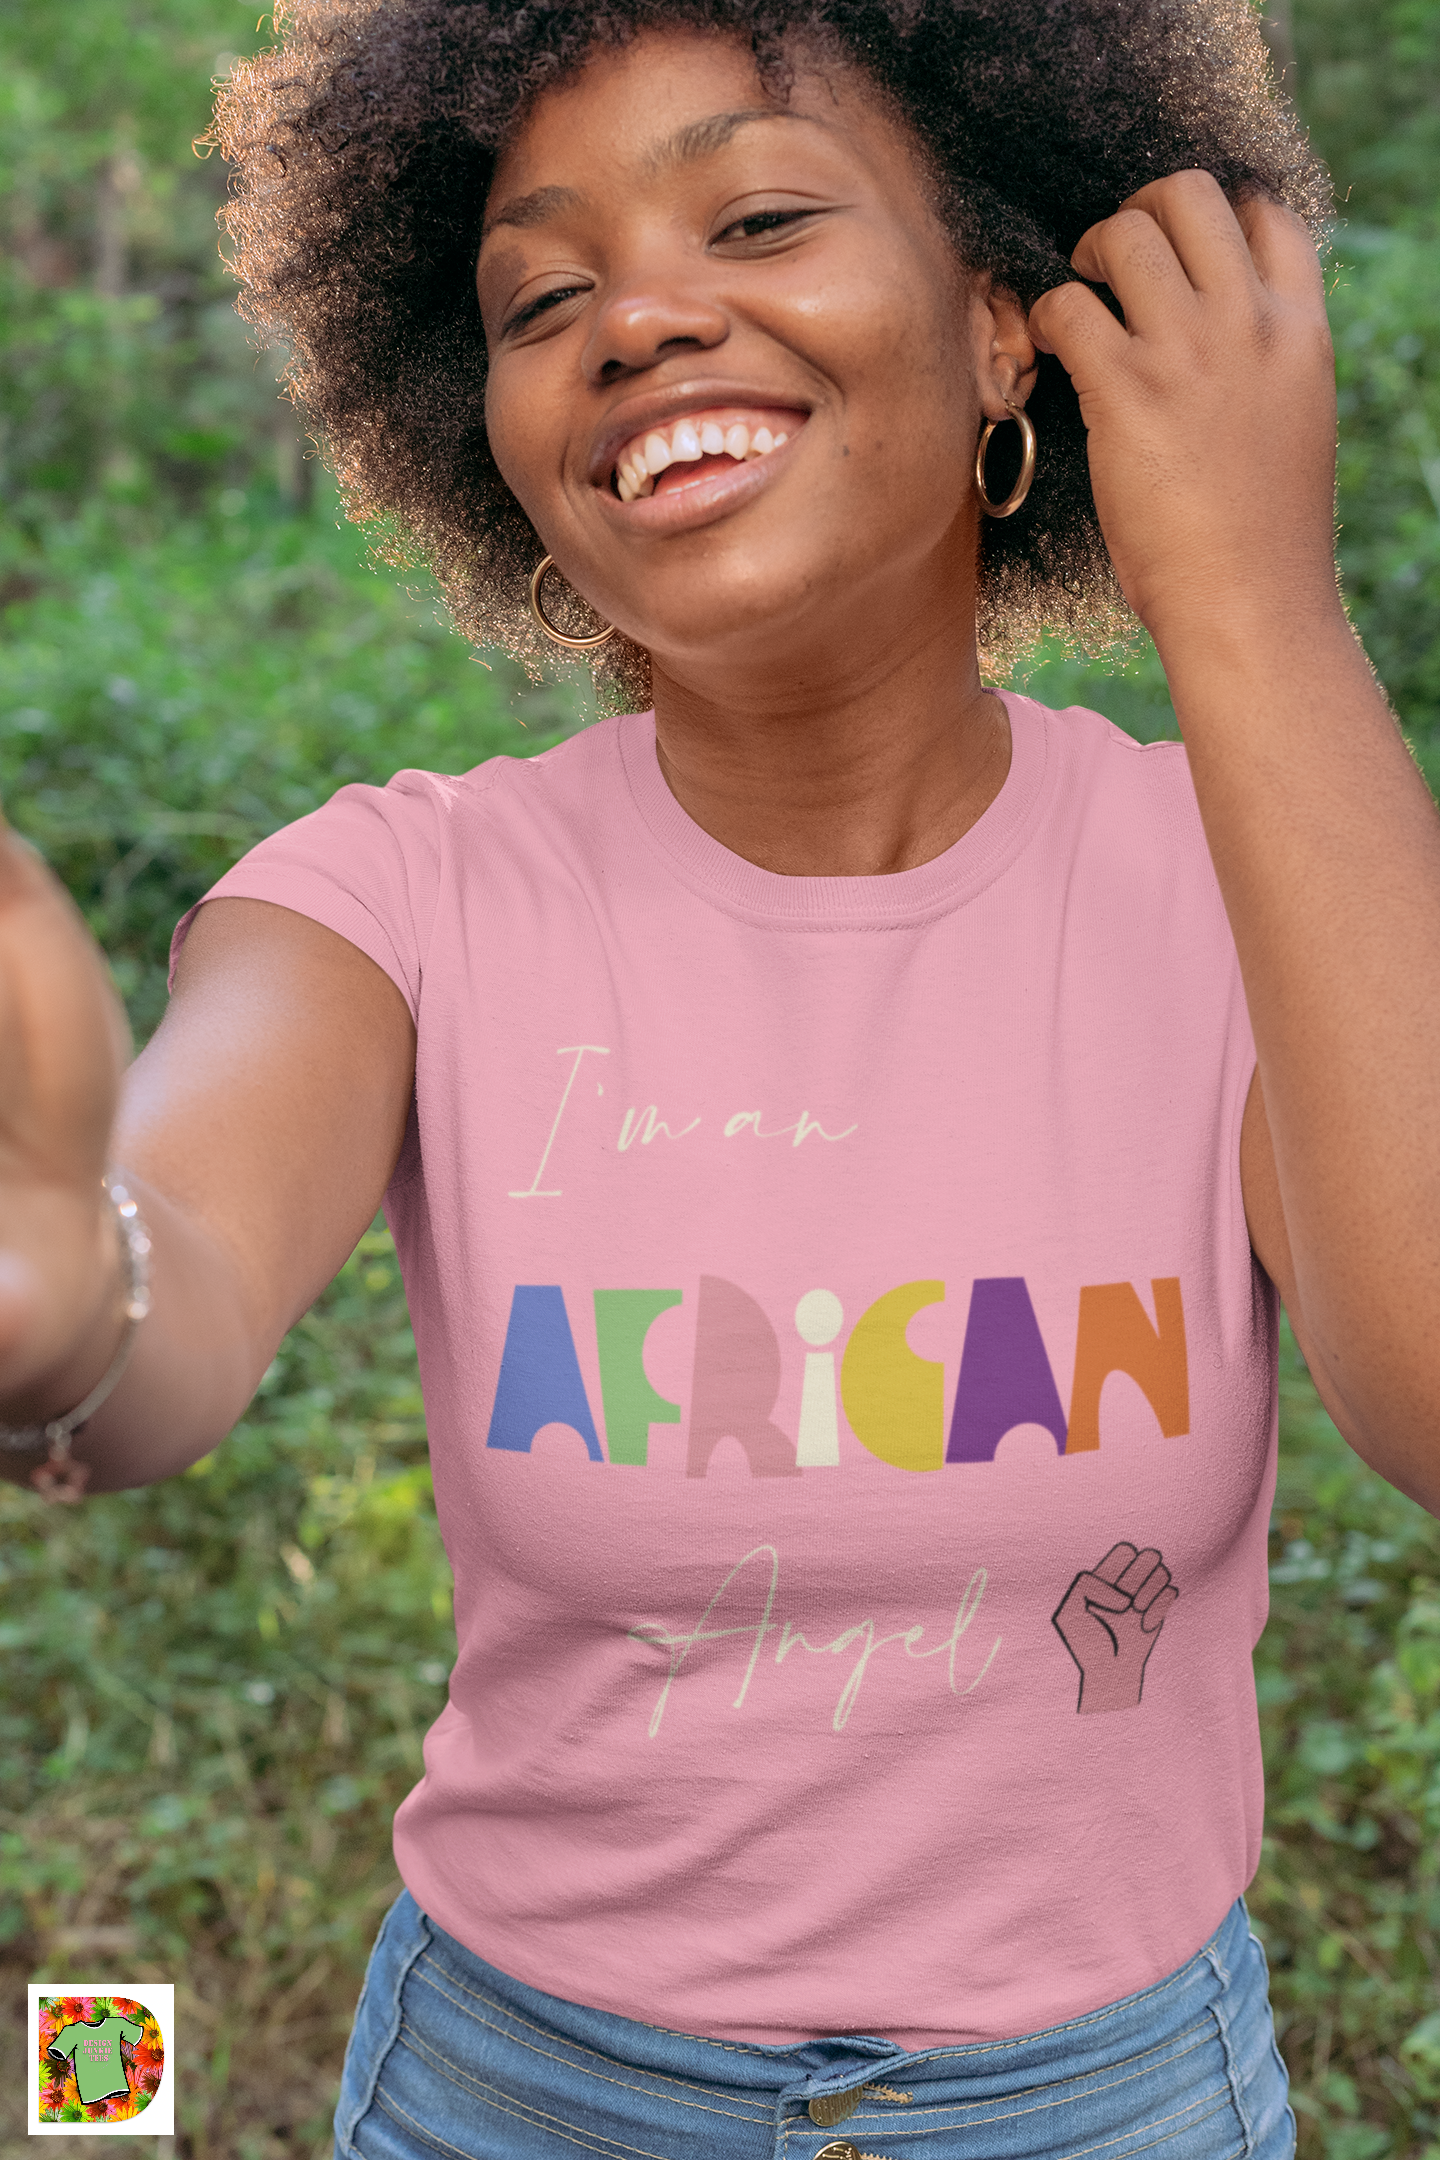 I'm an AFRICAN Angel Short-Sleeve T-Shirt